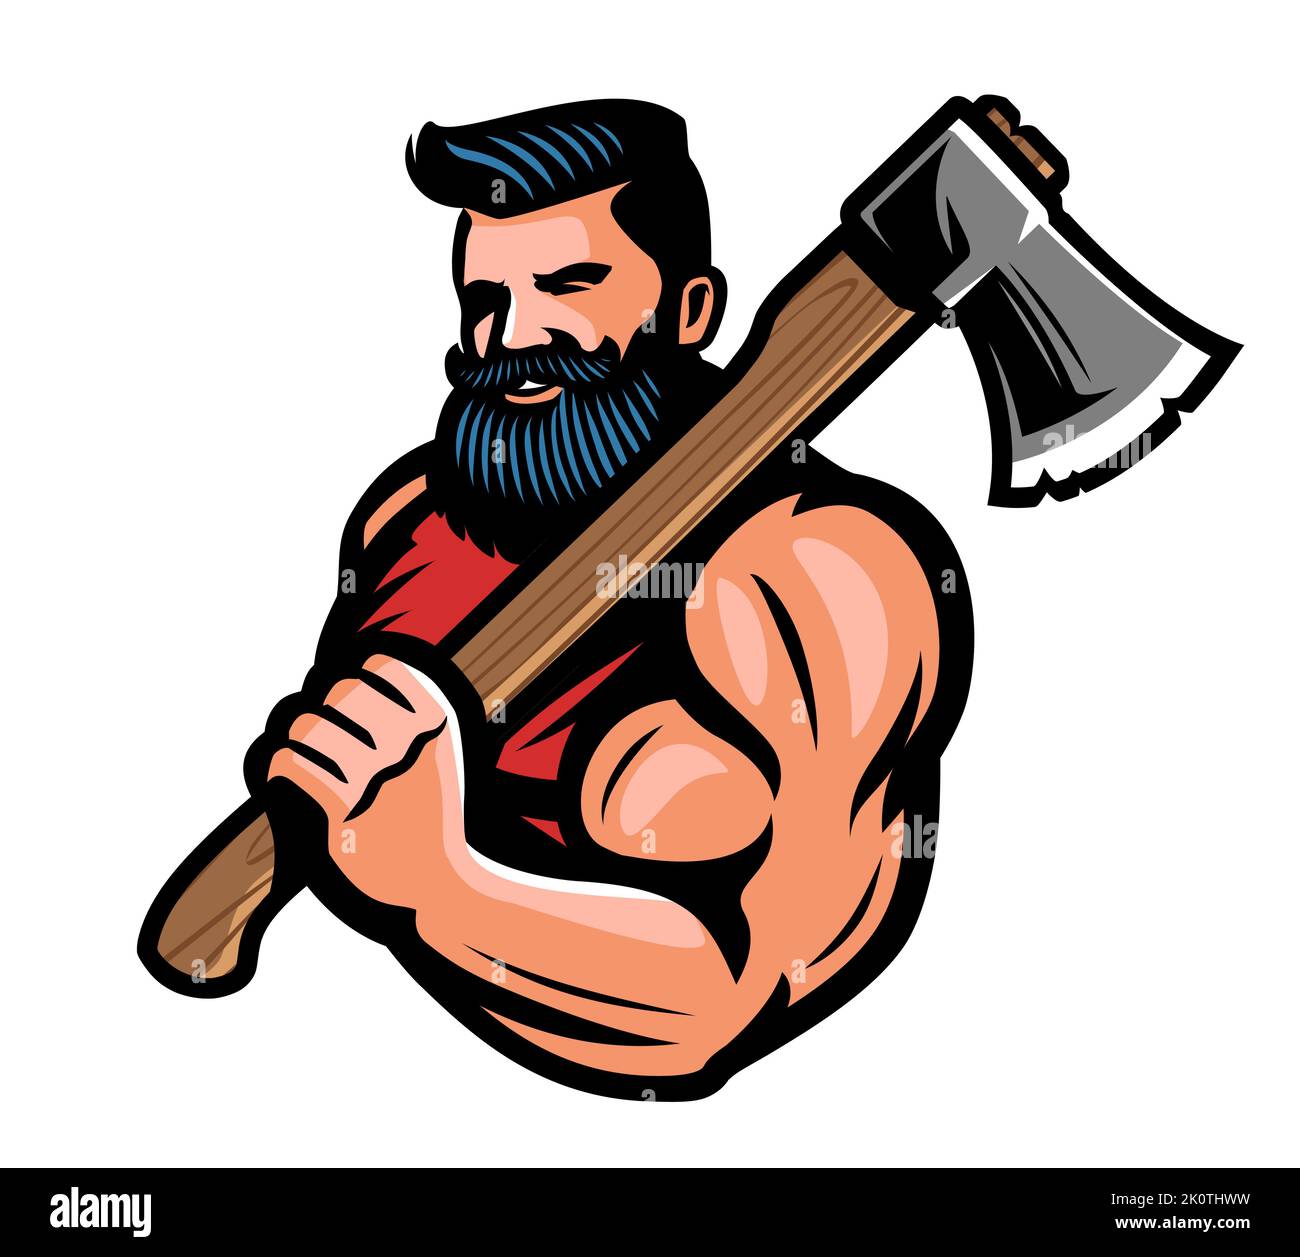 Lumberjack muscoloso con grande ascia in mano. Guerriero o vichingo con l'emblema dell'ascia da battaglia. Illustrazione vettoriale mascotte Illustrazione Vettoriale